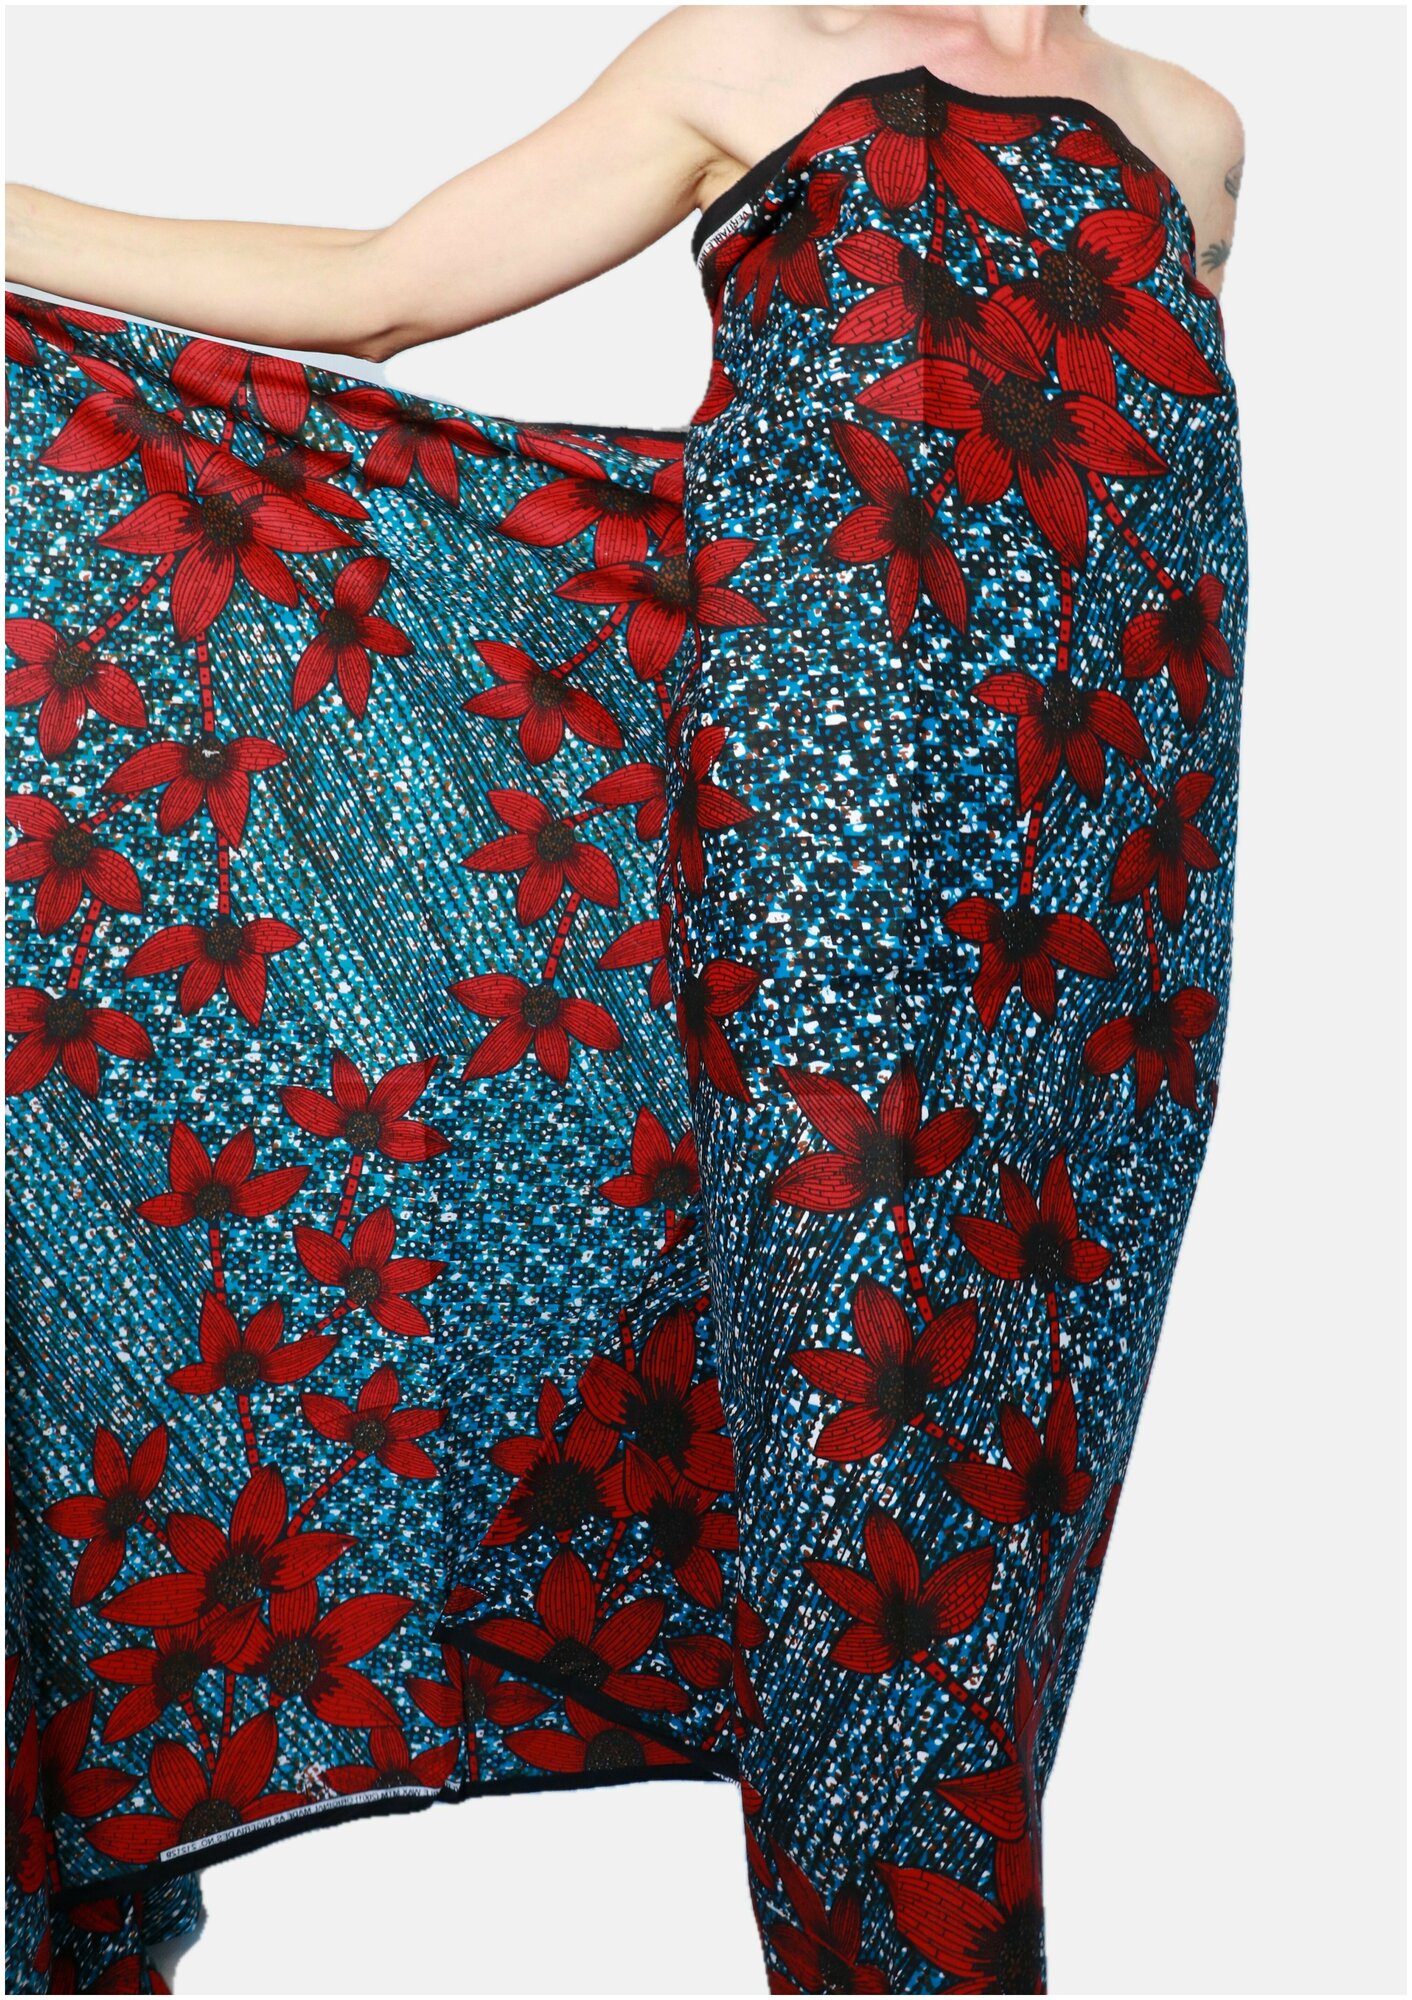 Ткань для шитья и рукоделия/ 100% африканский хлопок/ этнический принт из Танзании/ ткань для одежды, платьев, костюмов, декора/ 117х100 см.